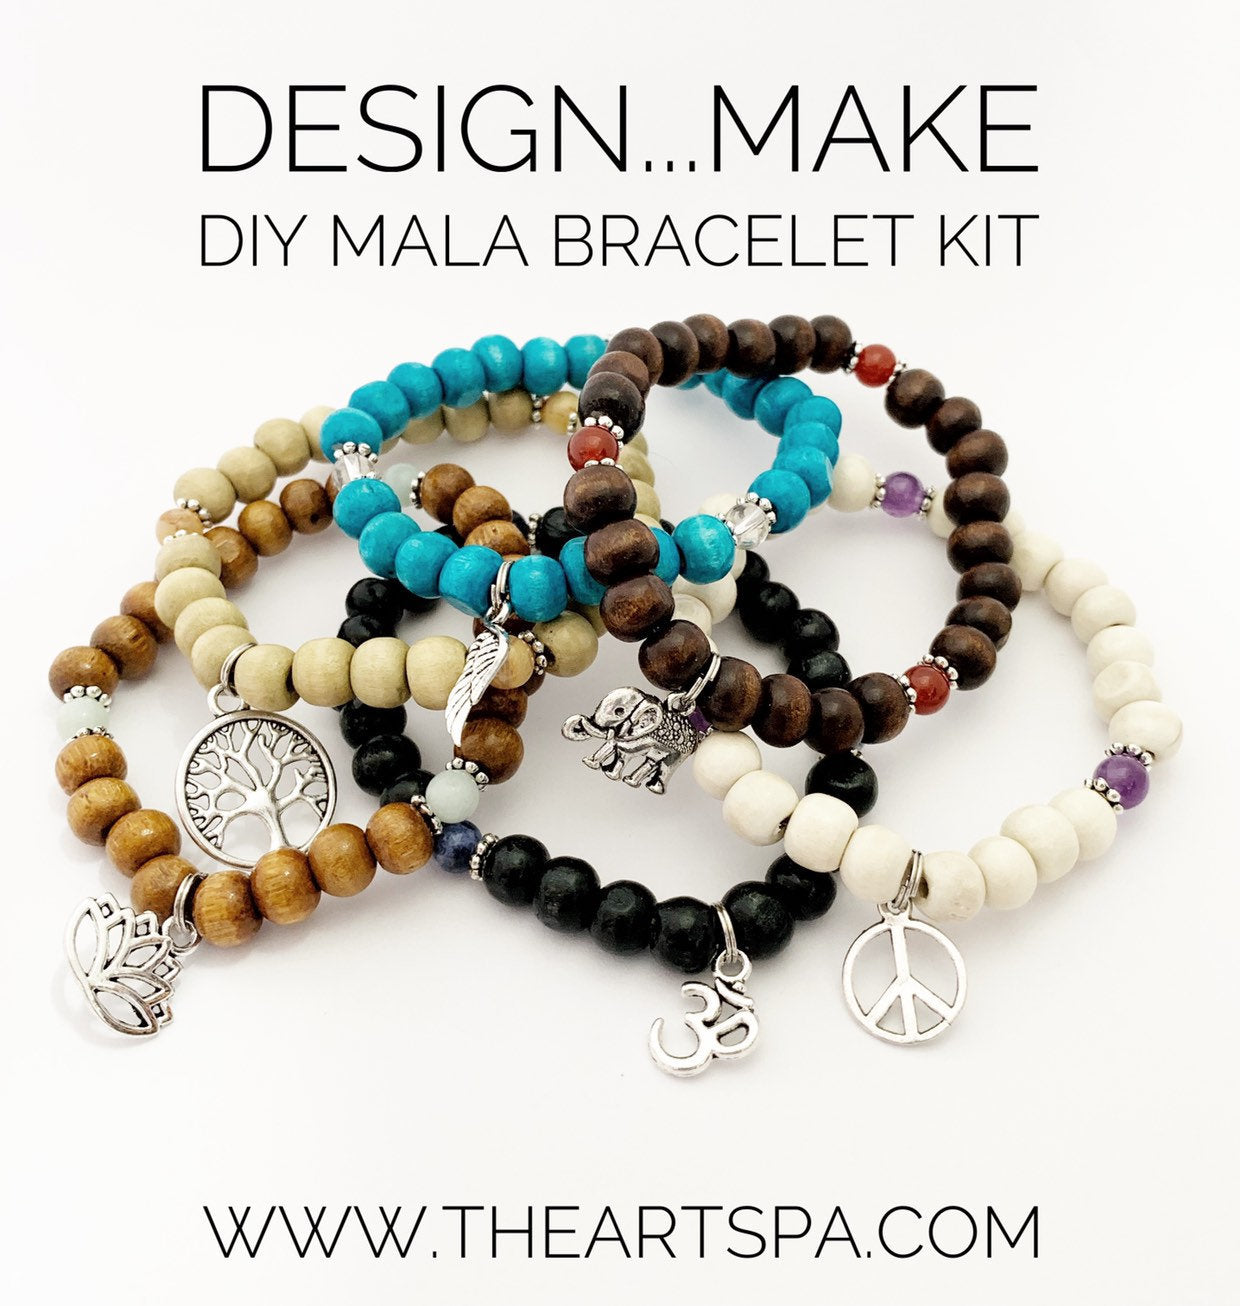 DesignMake - DIY Mala Bracelet - DIY Kit - 27 Beads - Prayer